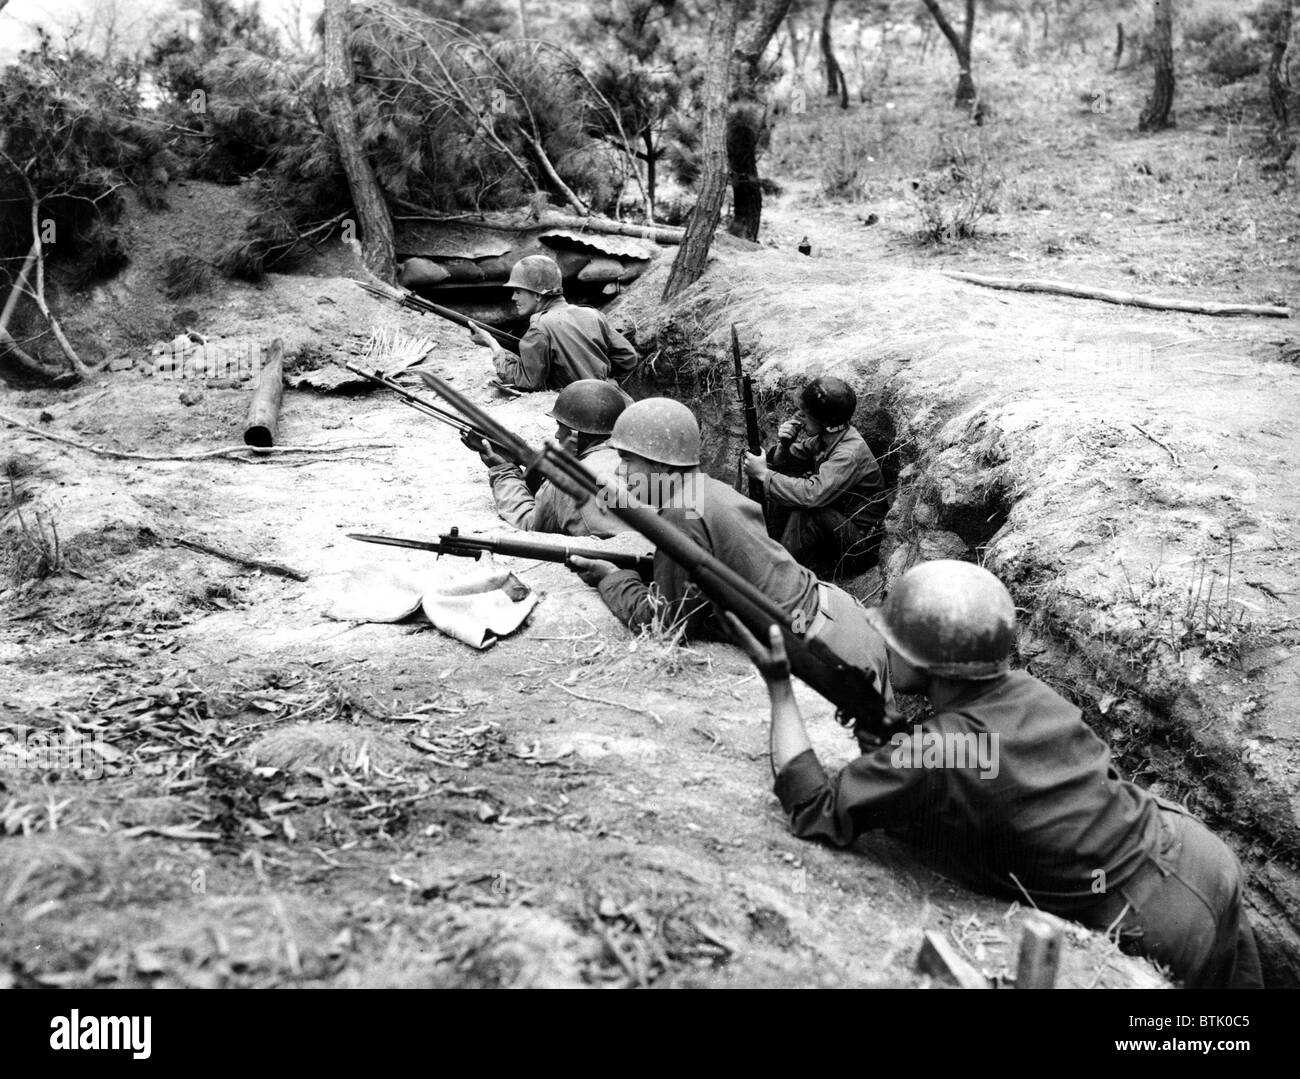 Koreakrieg: US-Soldaten in den Schützengräben, Korea, 1950. Mit freundlicher Genehmigung Everett/CSU Archiv Stockfoto